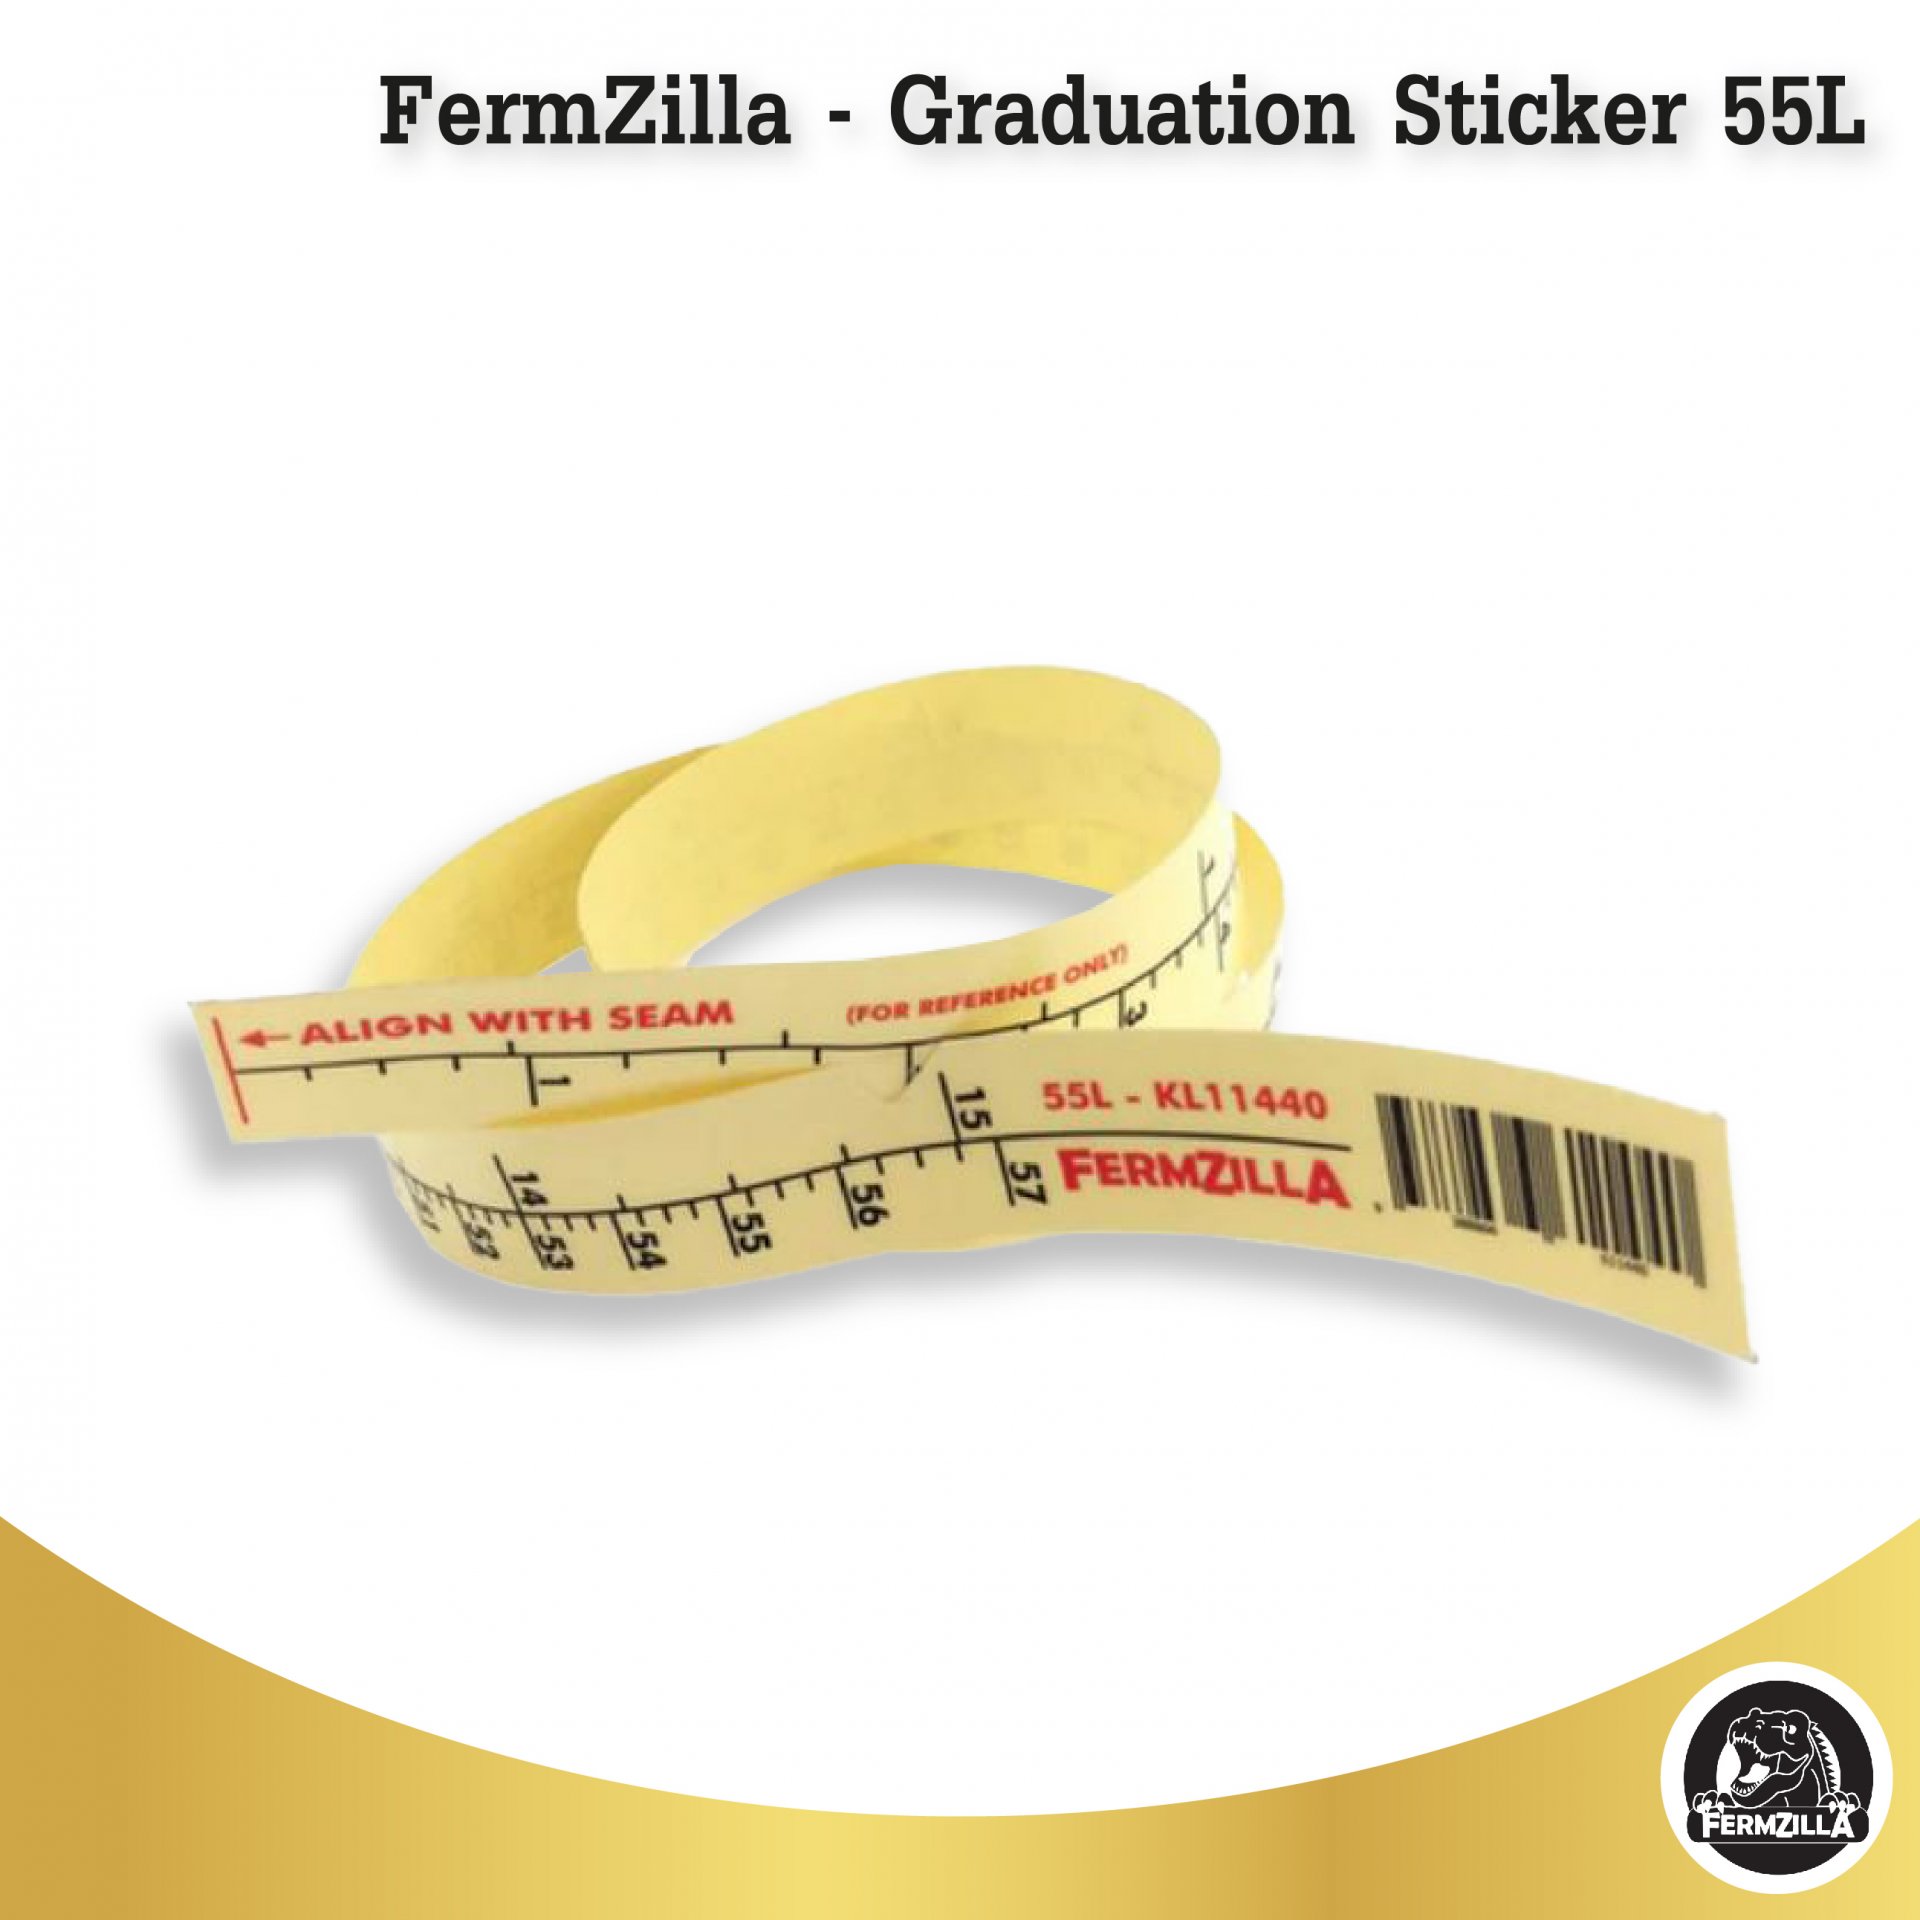 FermZilla - Graduation Sticker 55L